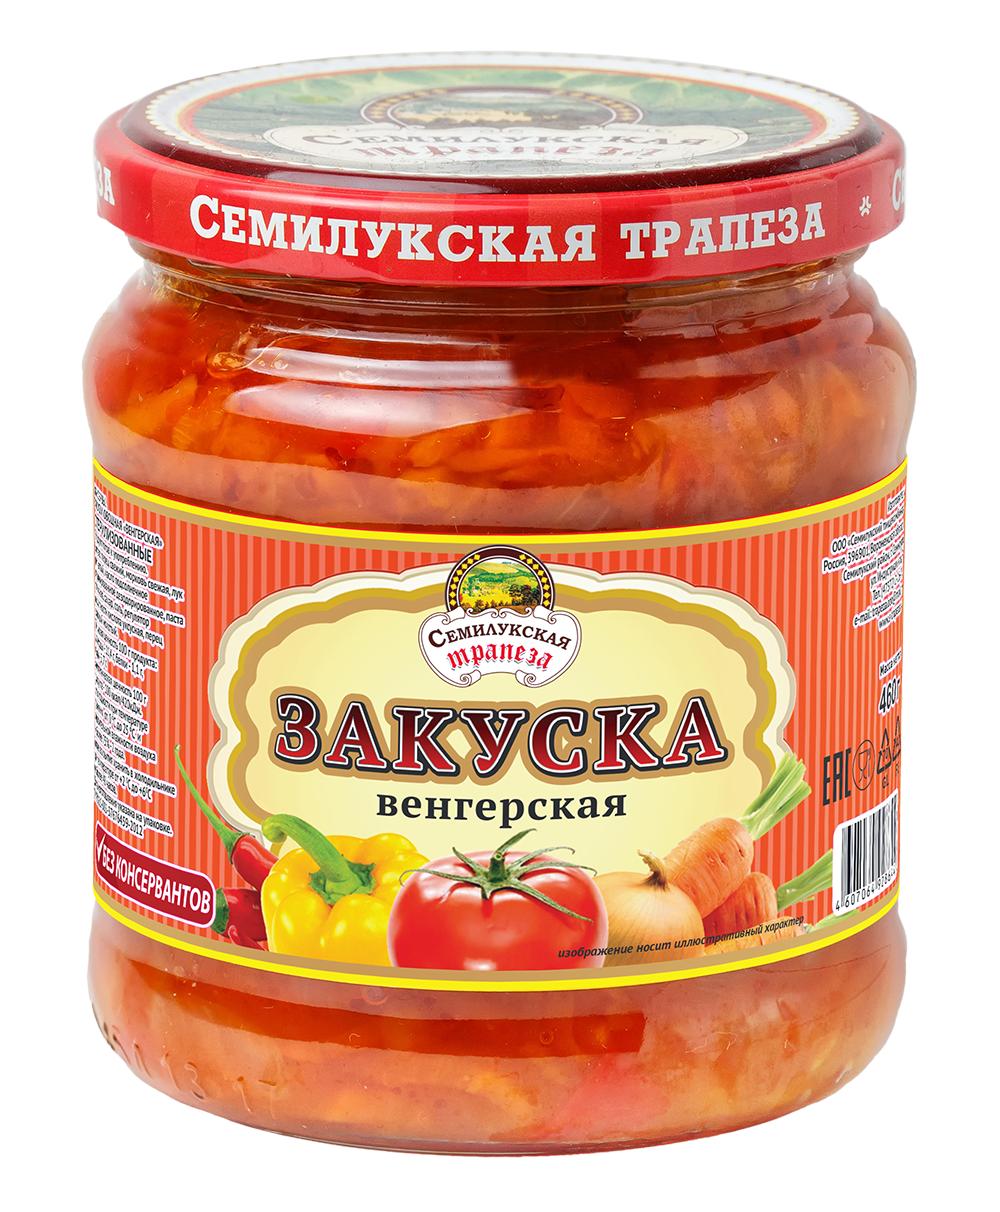 Закуска Семилукская трапеза овощная воронежская 500 гр., стекло